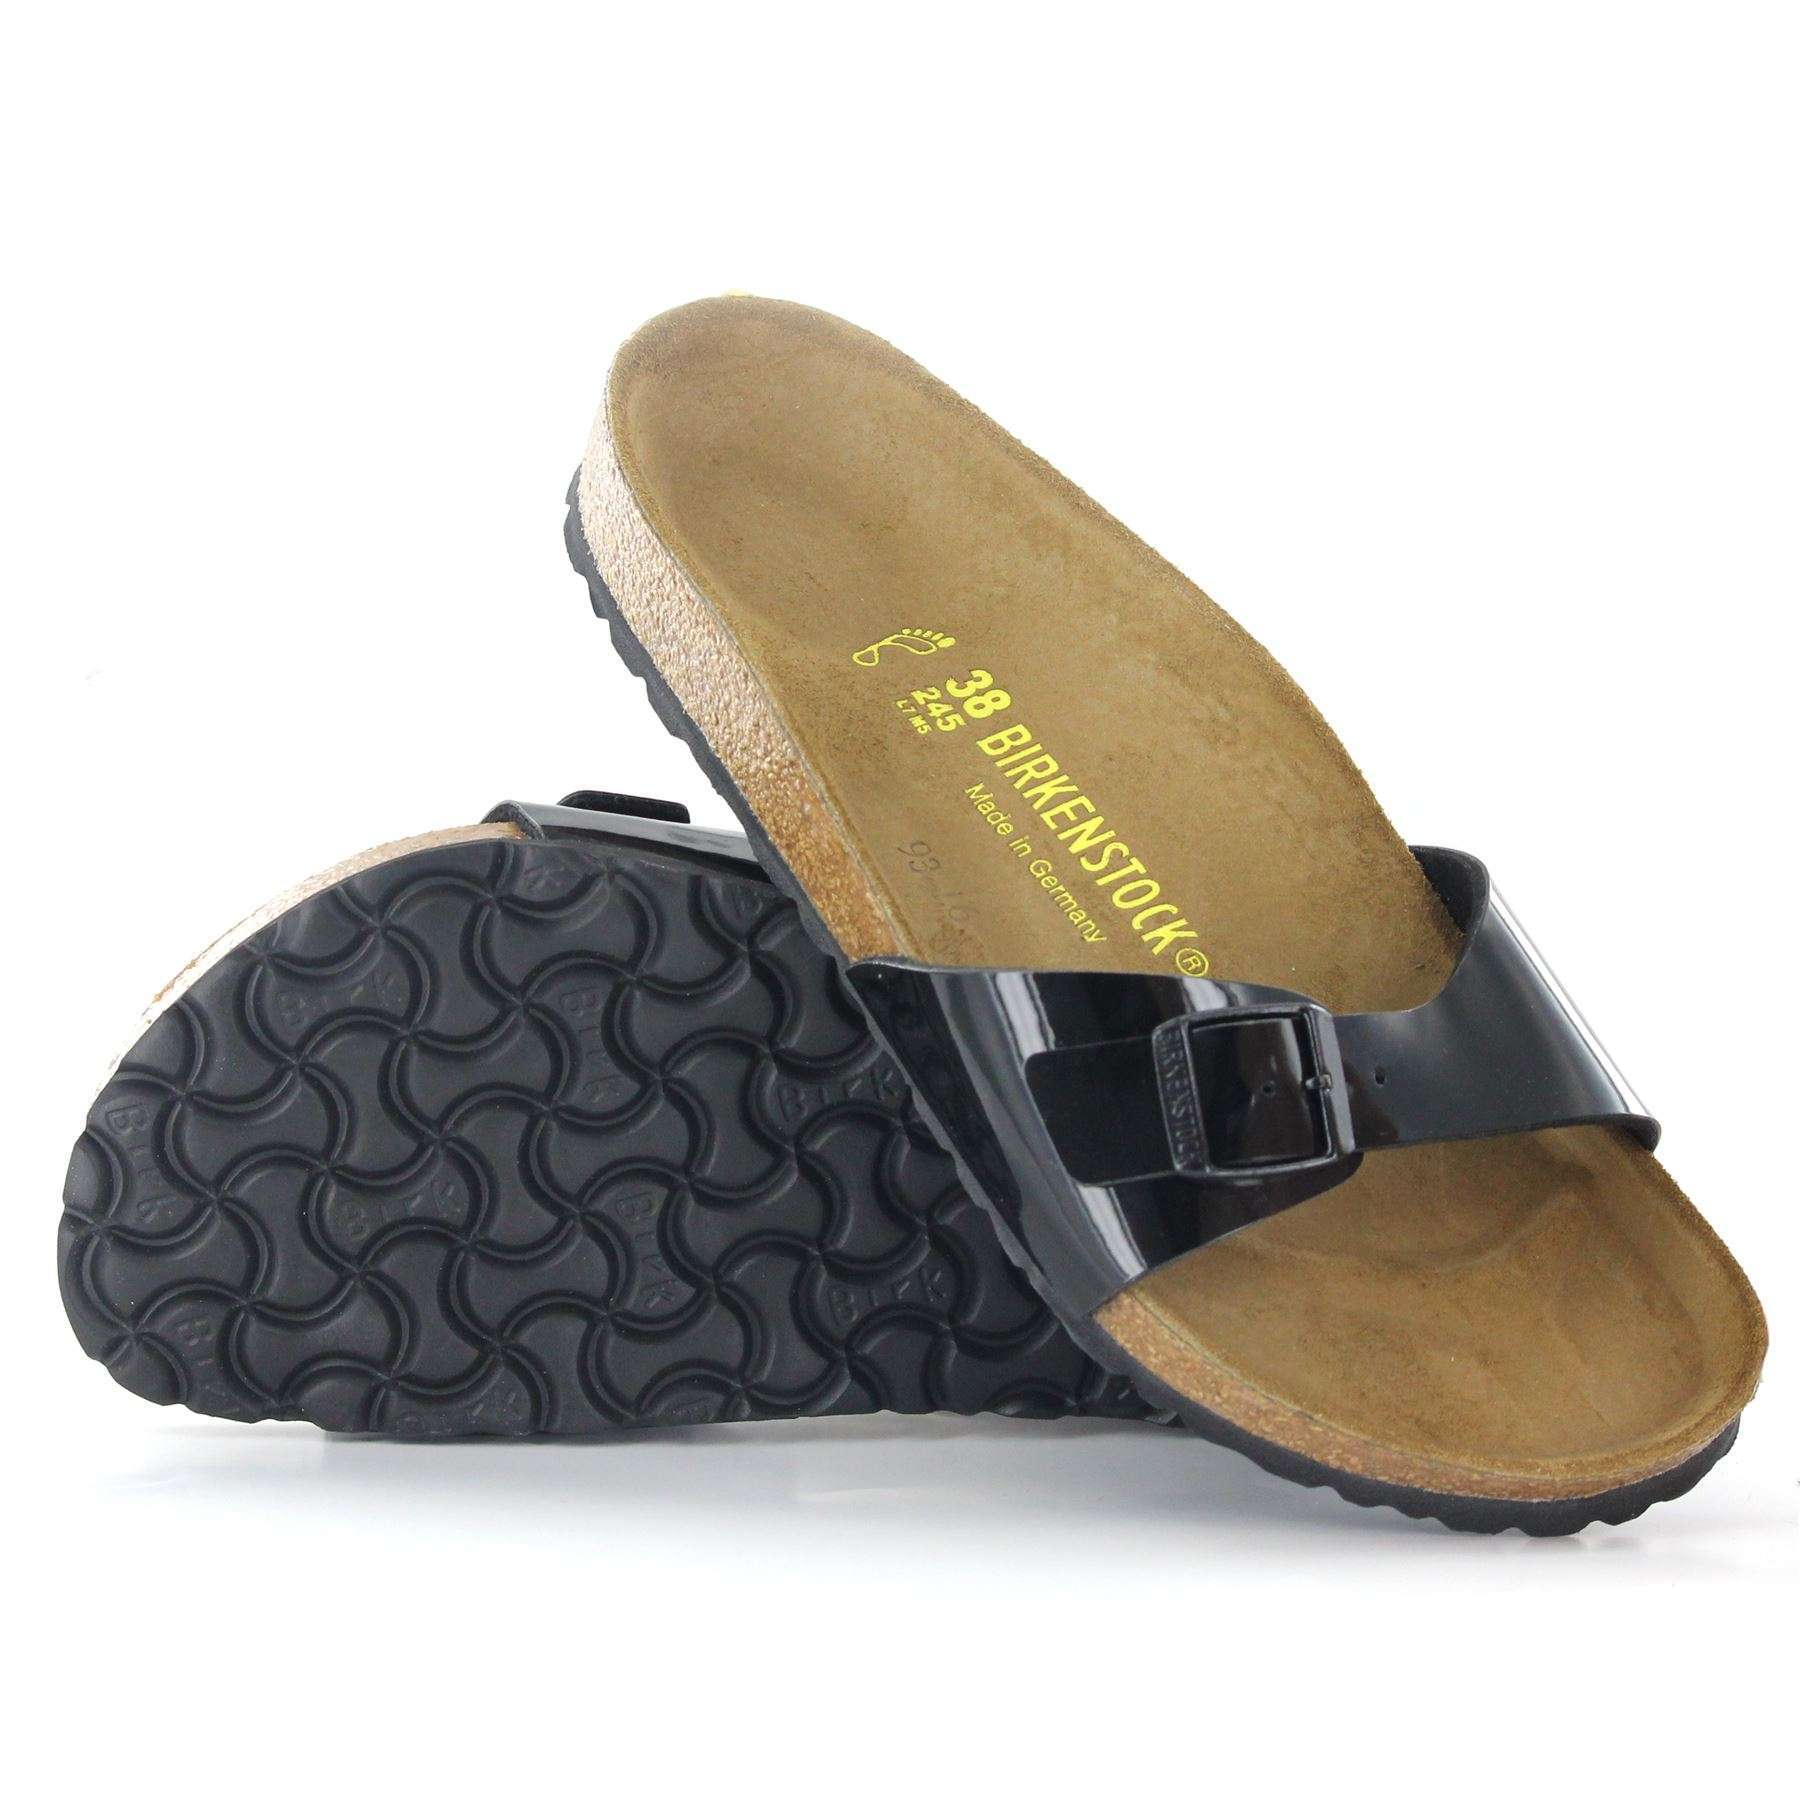 Madrid Patent Leather Unisex Sandals